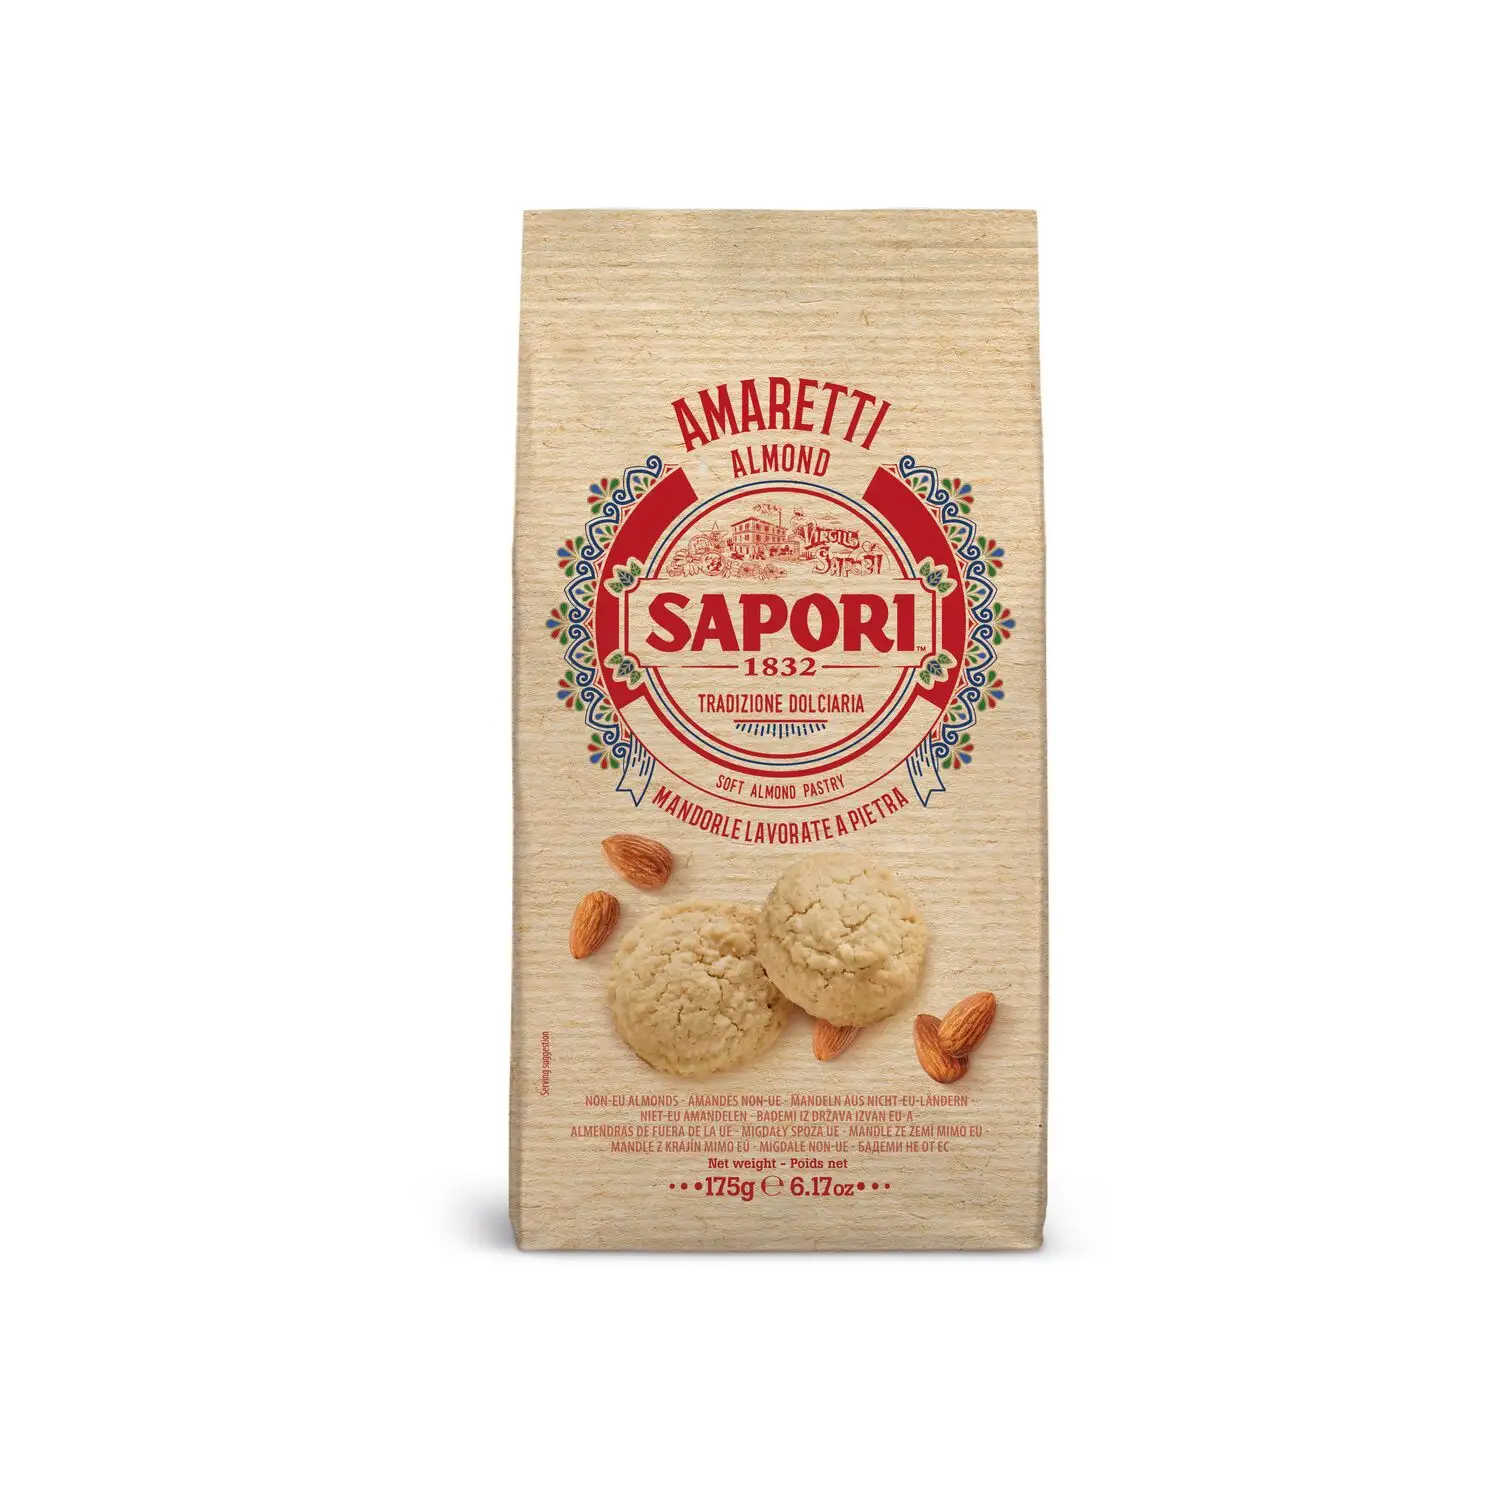 Мягкое миндальное тесто совершенство-SAPORI 1832 Amaretti 175Gx10pz-празднование вечного завтрака Тосканы